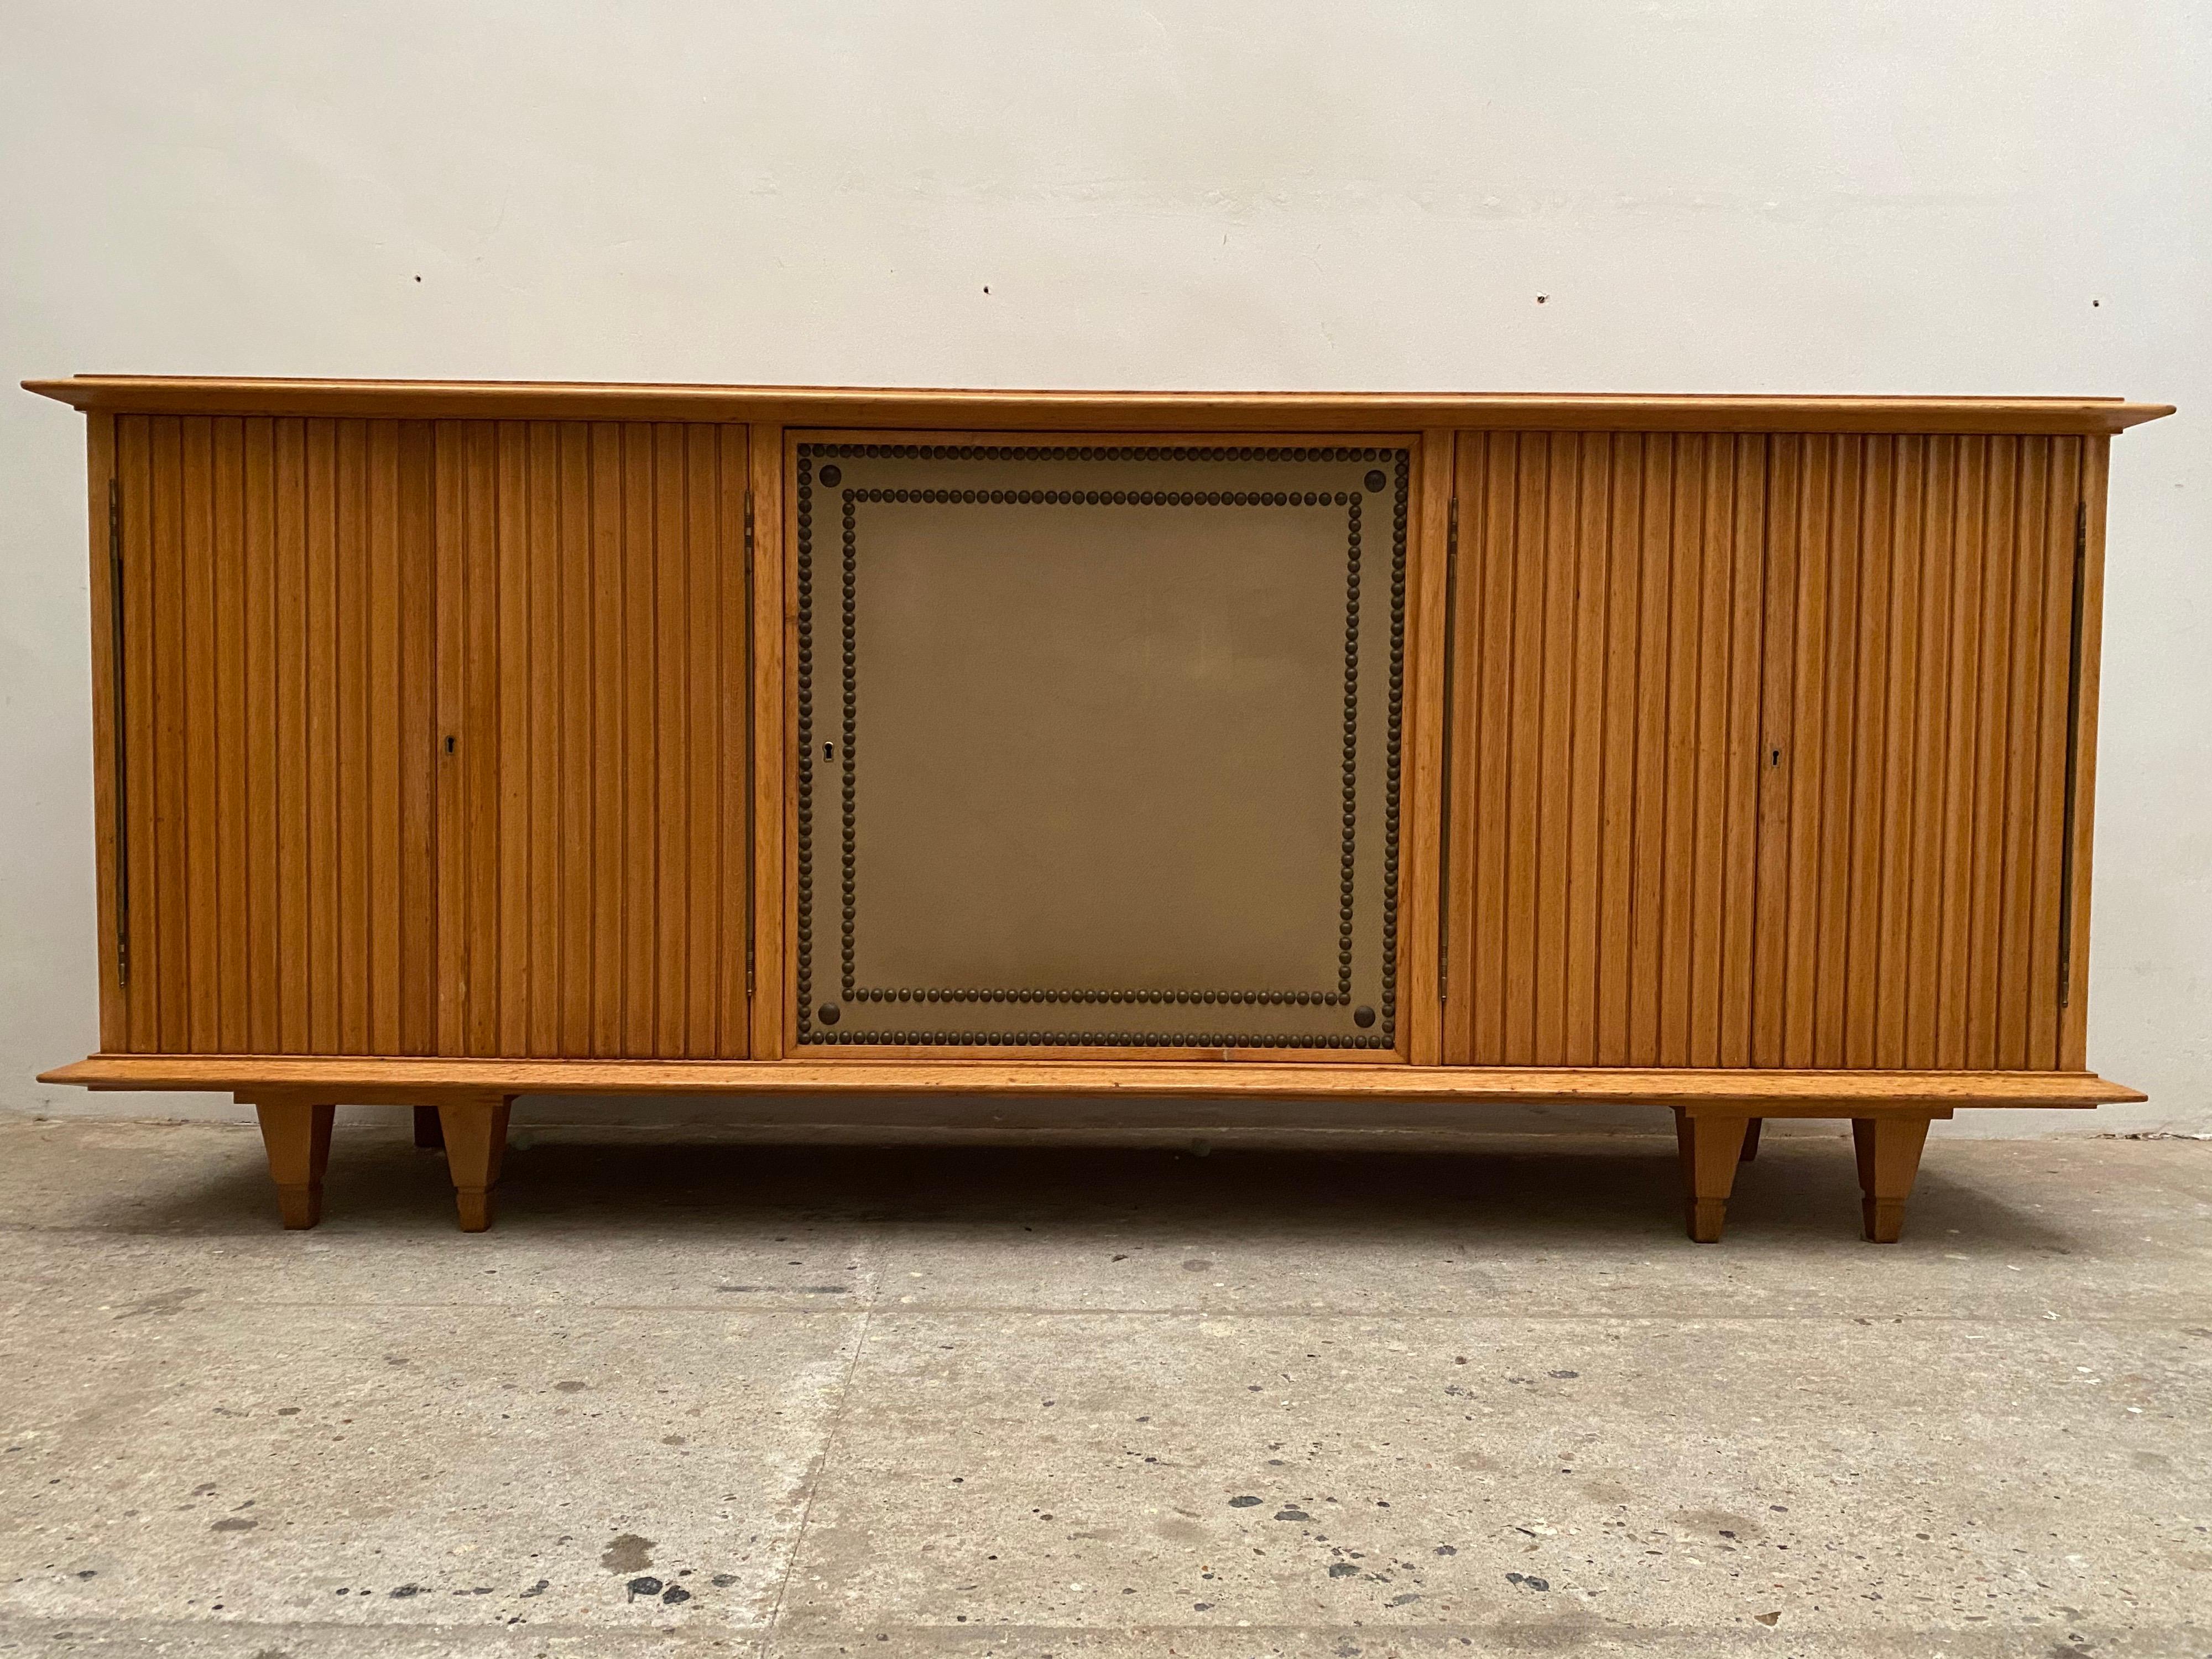 Außergewöhnliches Möbelstück aus Eiche und Eichenfurnier, sehr leicht geschliffen. Sideboard für eine Galerie, einzigartiges Stück von De Coene, 1940er Jahre. Der rechteckige Korpus ruht auf doppelten Eckbeinen und hat eine konturierte Platte mit